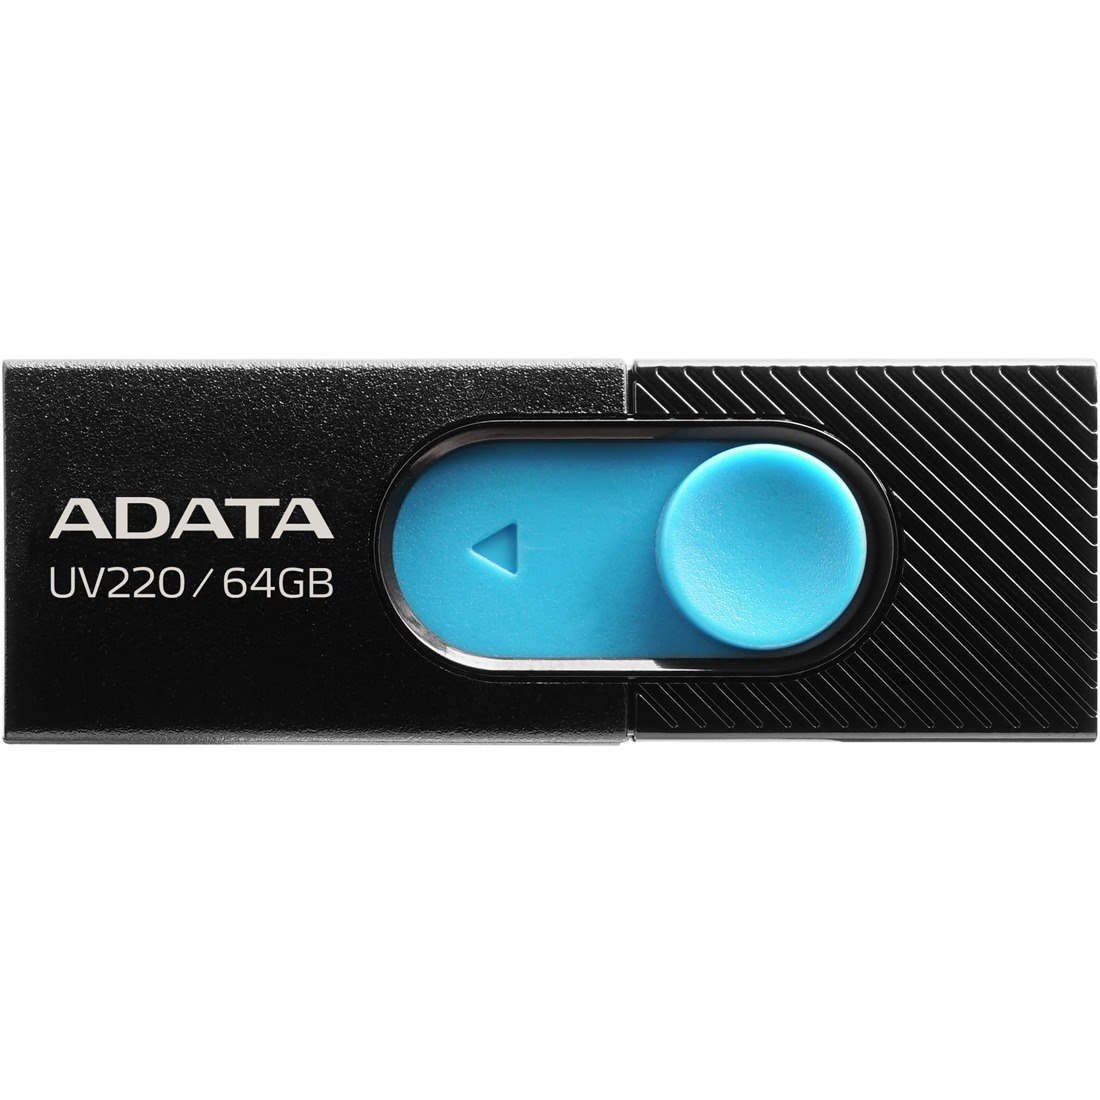 Adata Classic UV220 64GB USB 2.0 Flash Drive